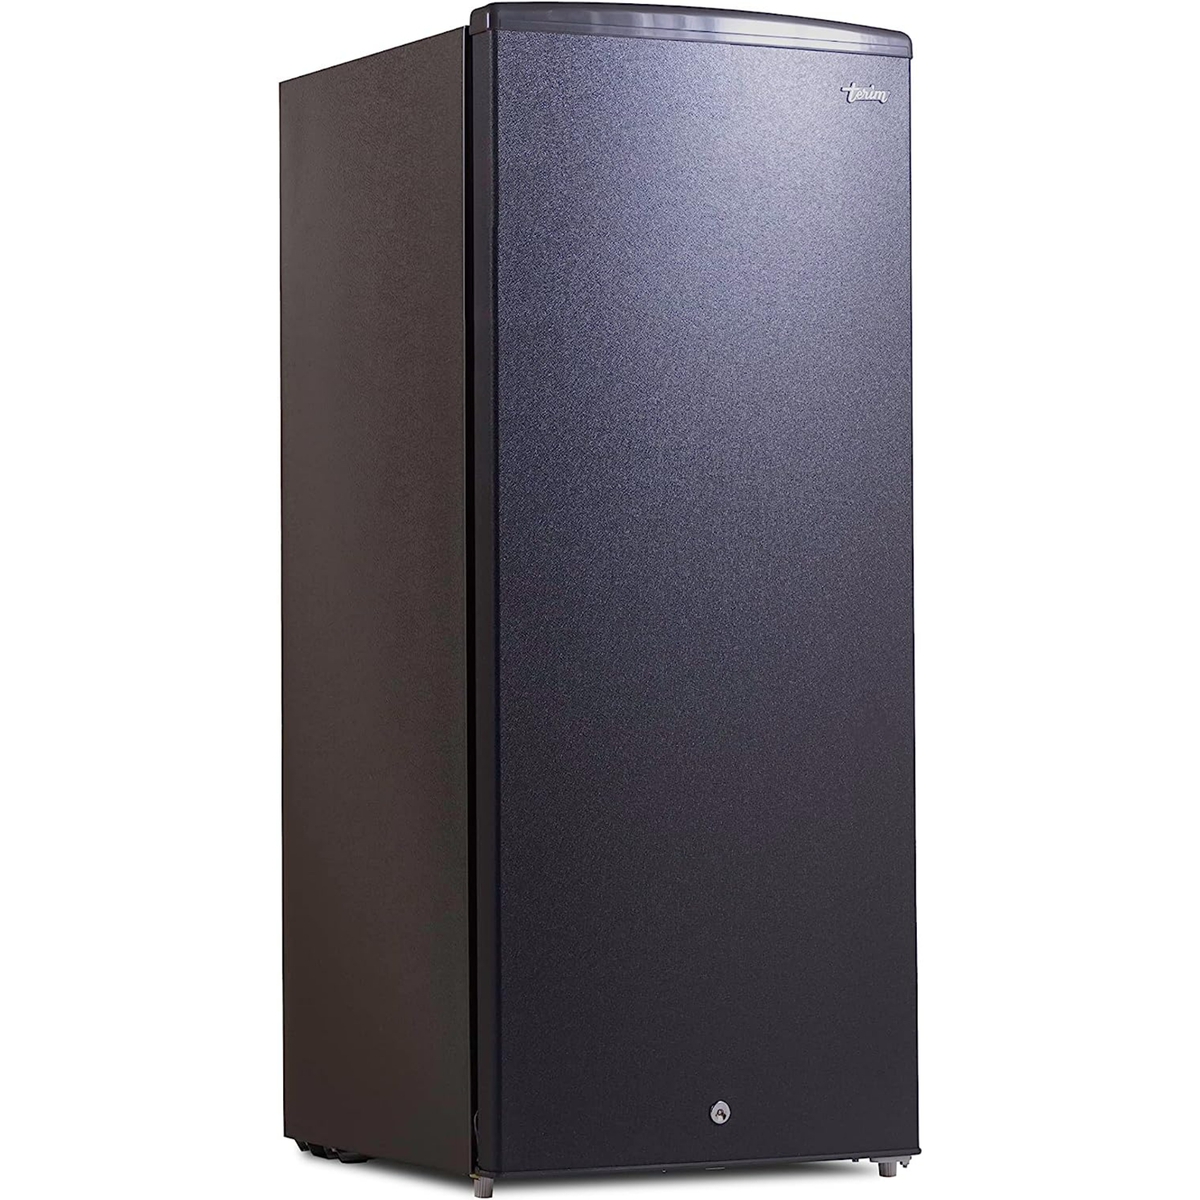 Terim Single Door Refrigerator, 245 L, Silver, TERR245S